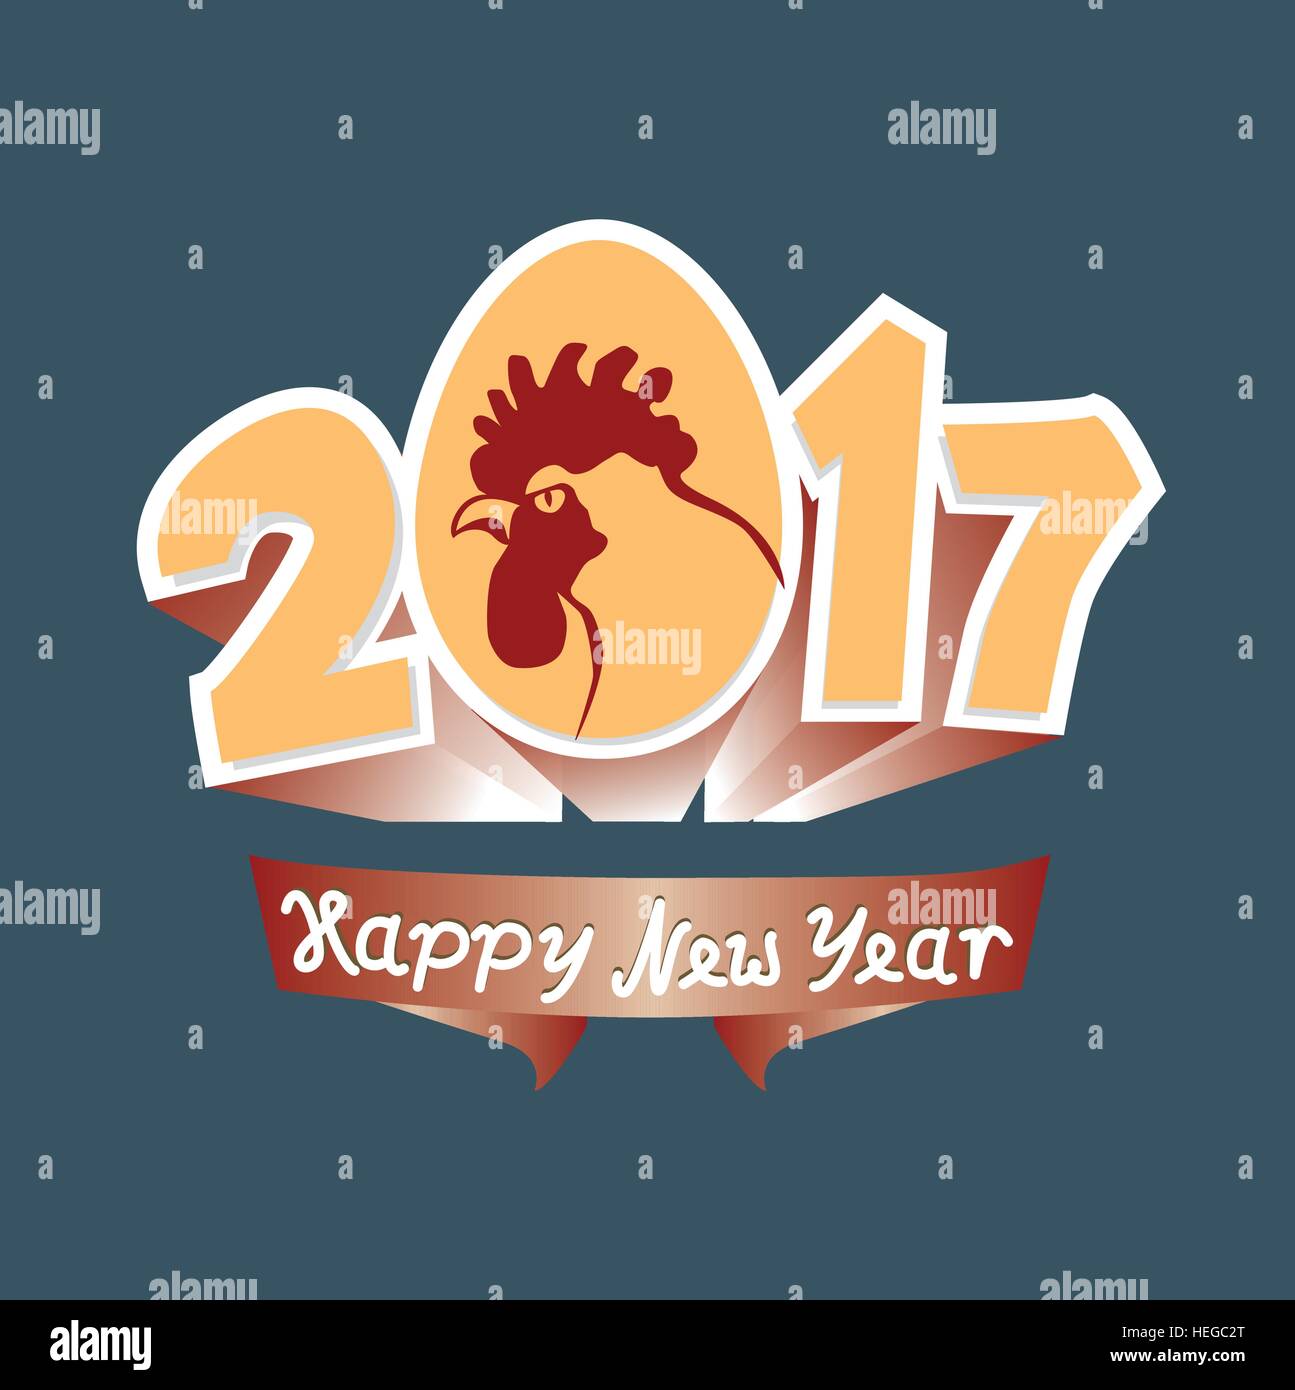 Gallo e 2017 figure. Saluto Anno Nuovo. Rooster è un simbolo dello zodiaco del 2017 anno di calendario orientale. illustrazione vettoriale in stile retrò. Illustrazione Vettoriale